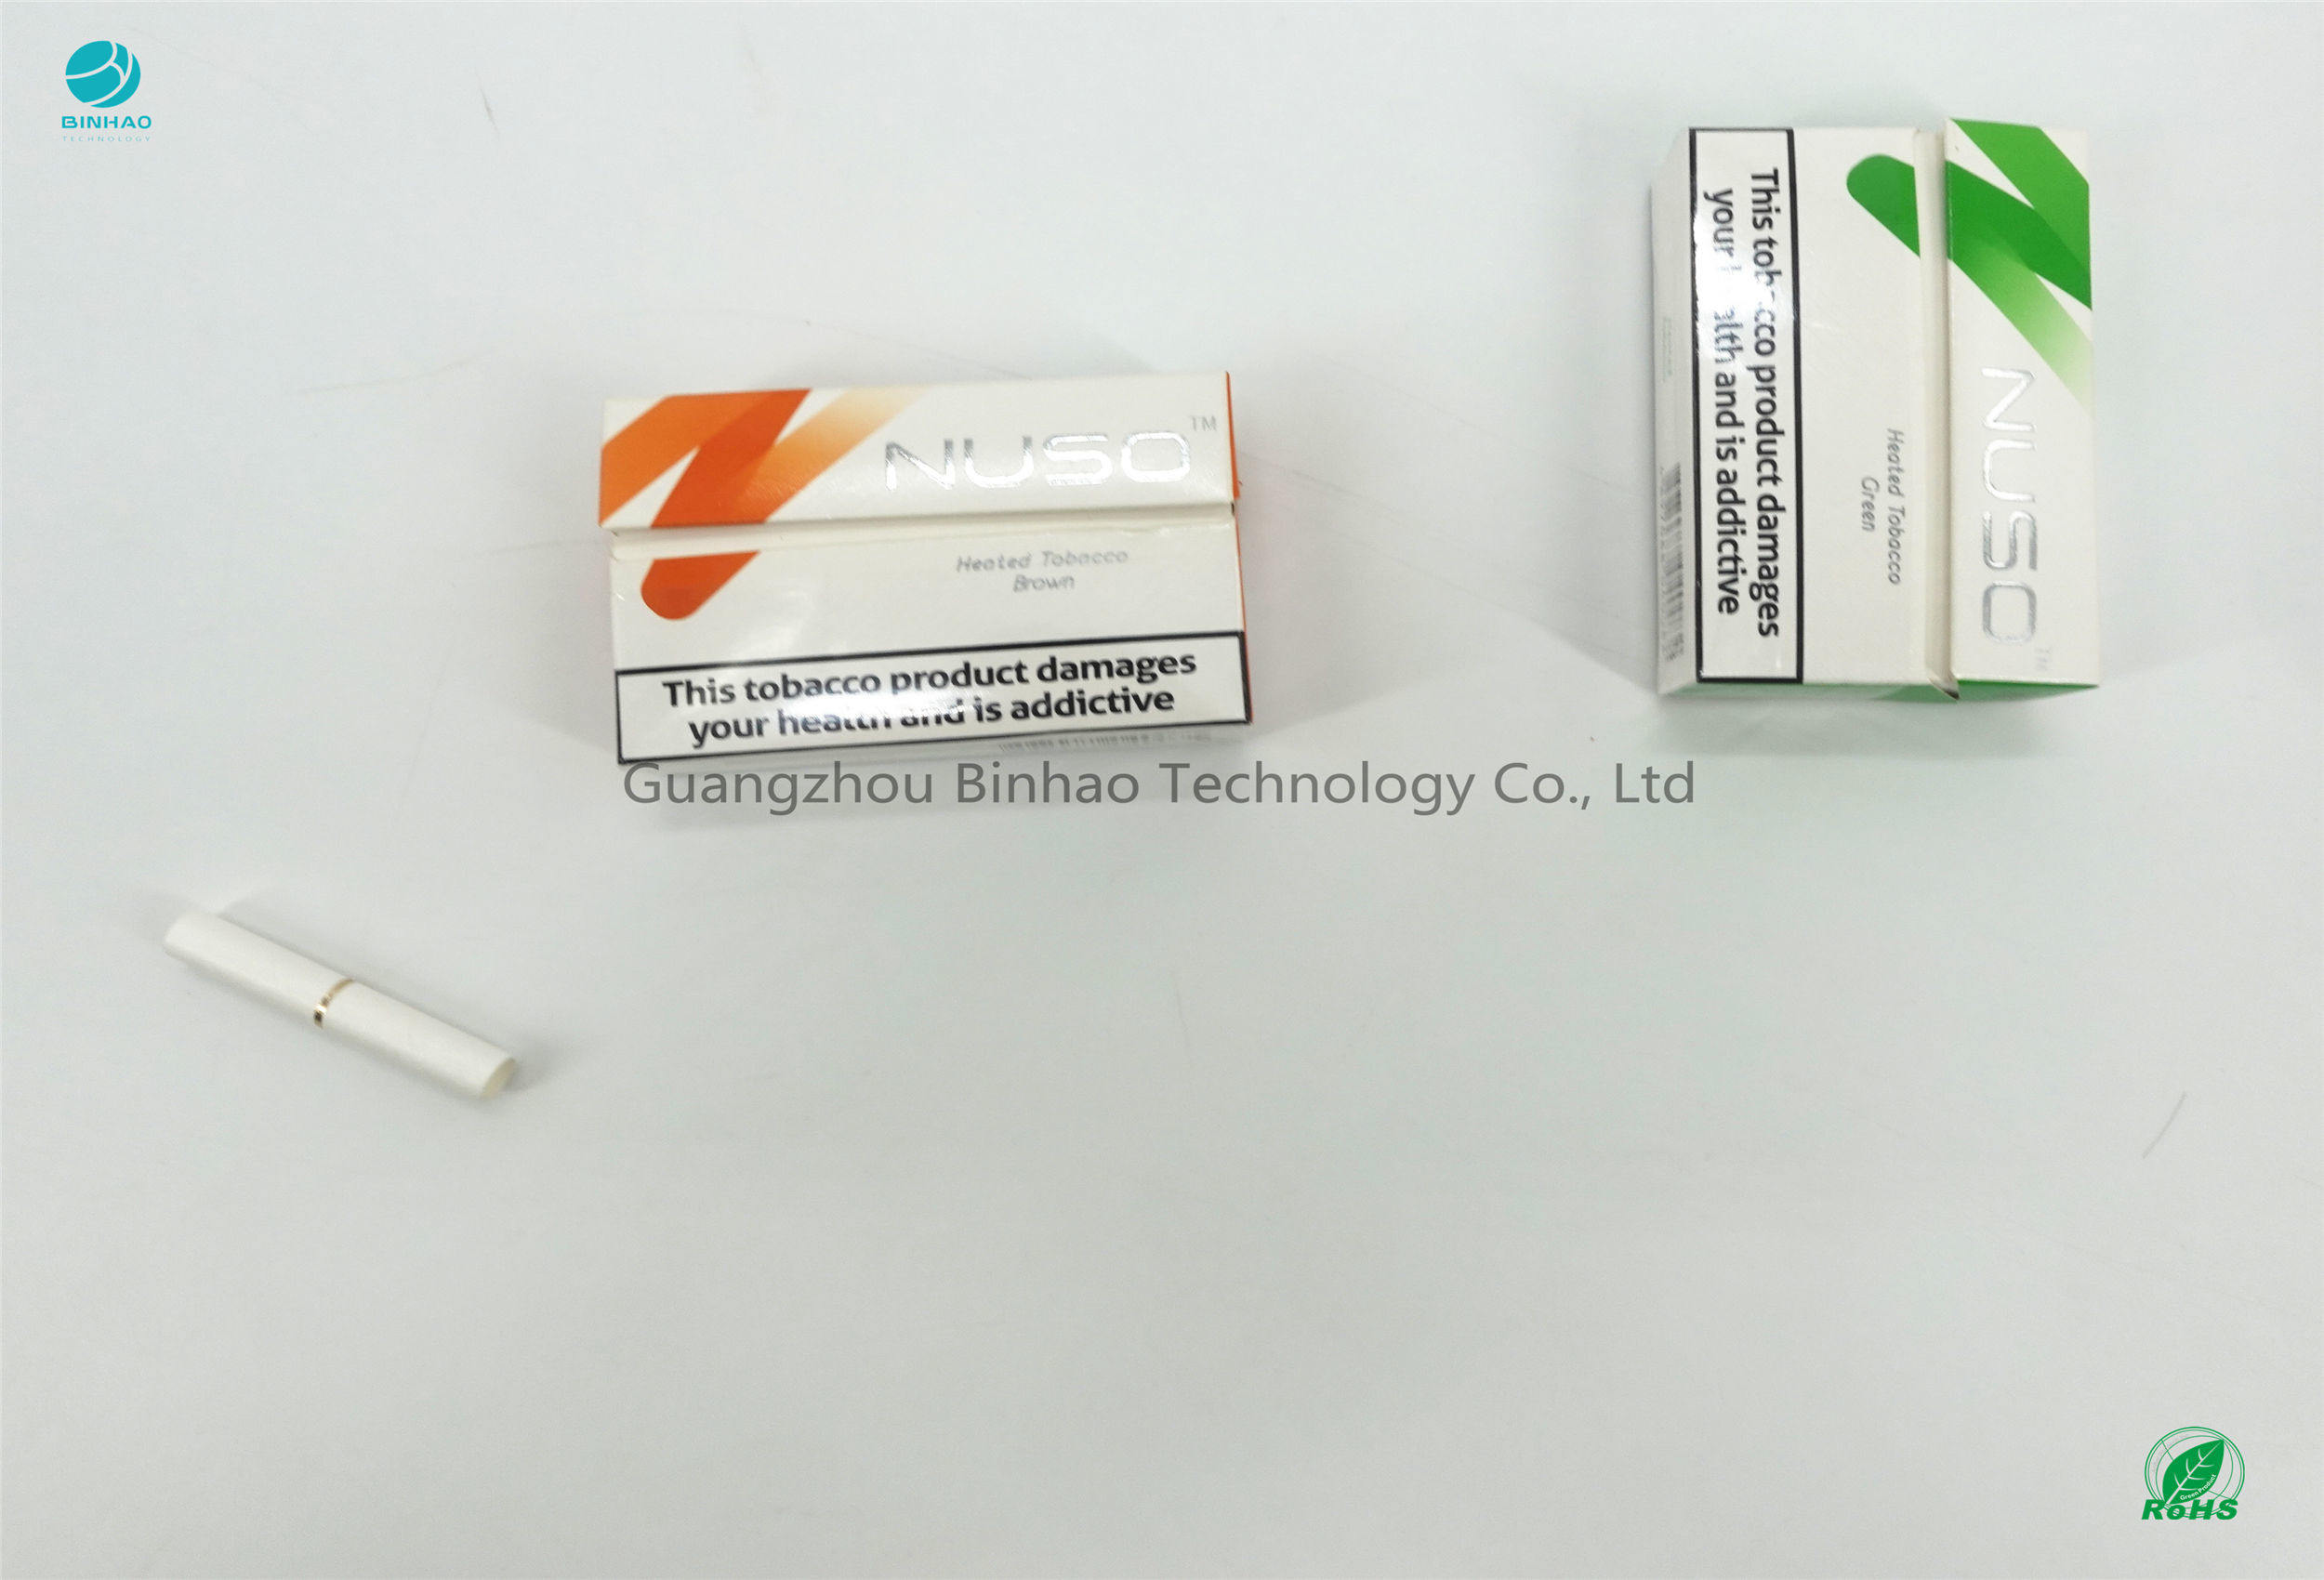 Les cas de paquet d'E-cigarette de HNB ont adapté la pâte à papier aux besoins du client chimique blanchie